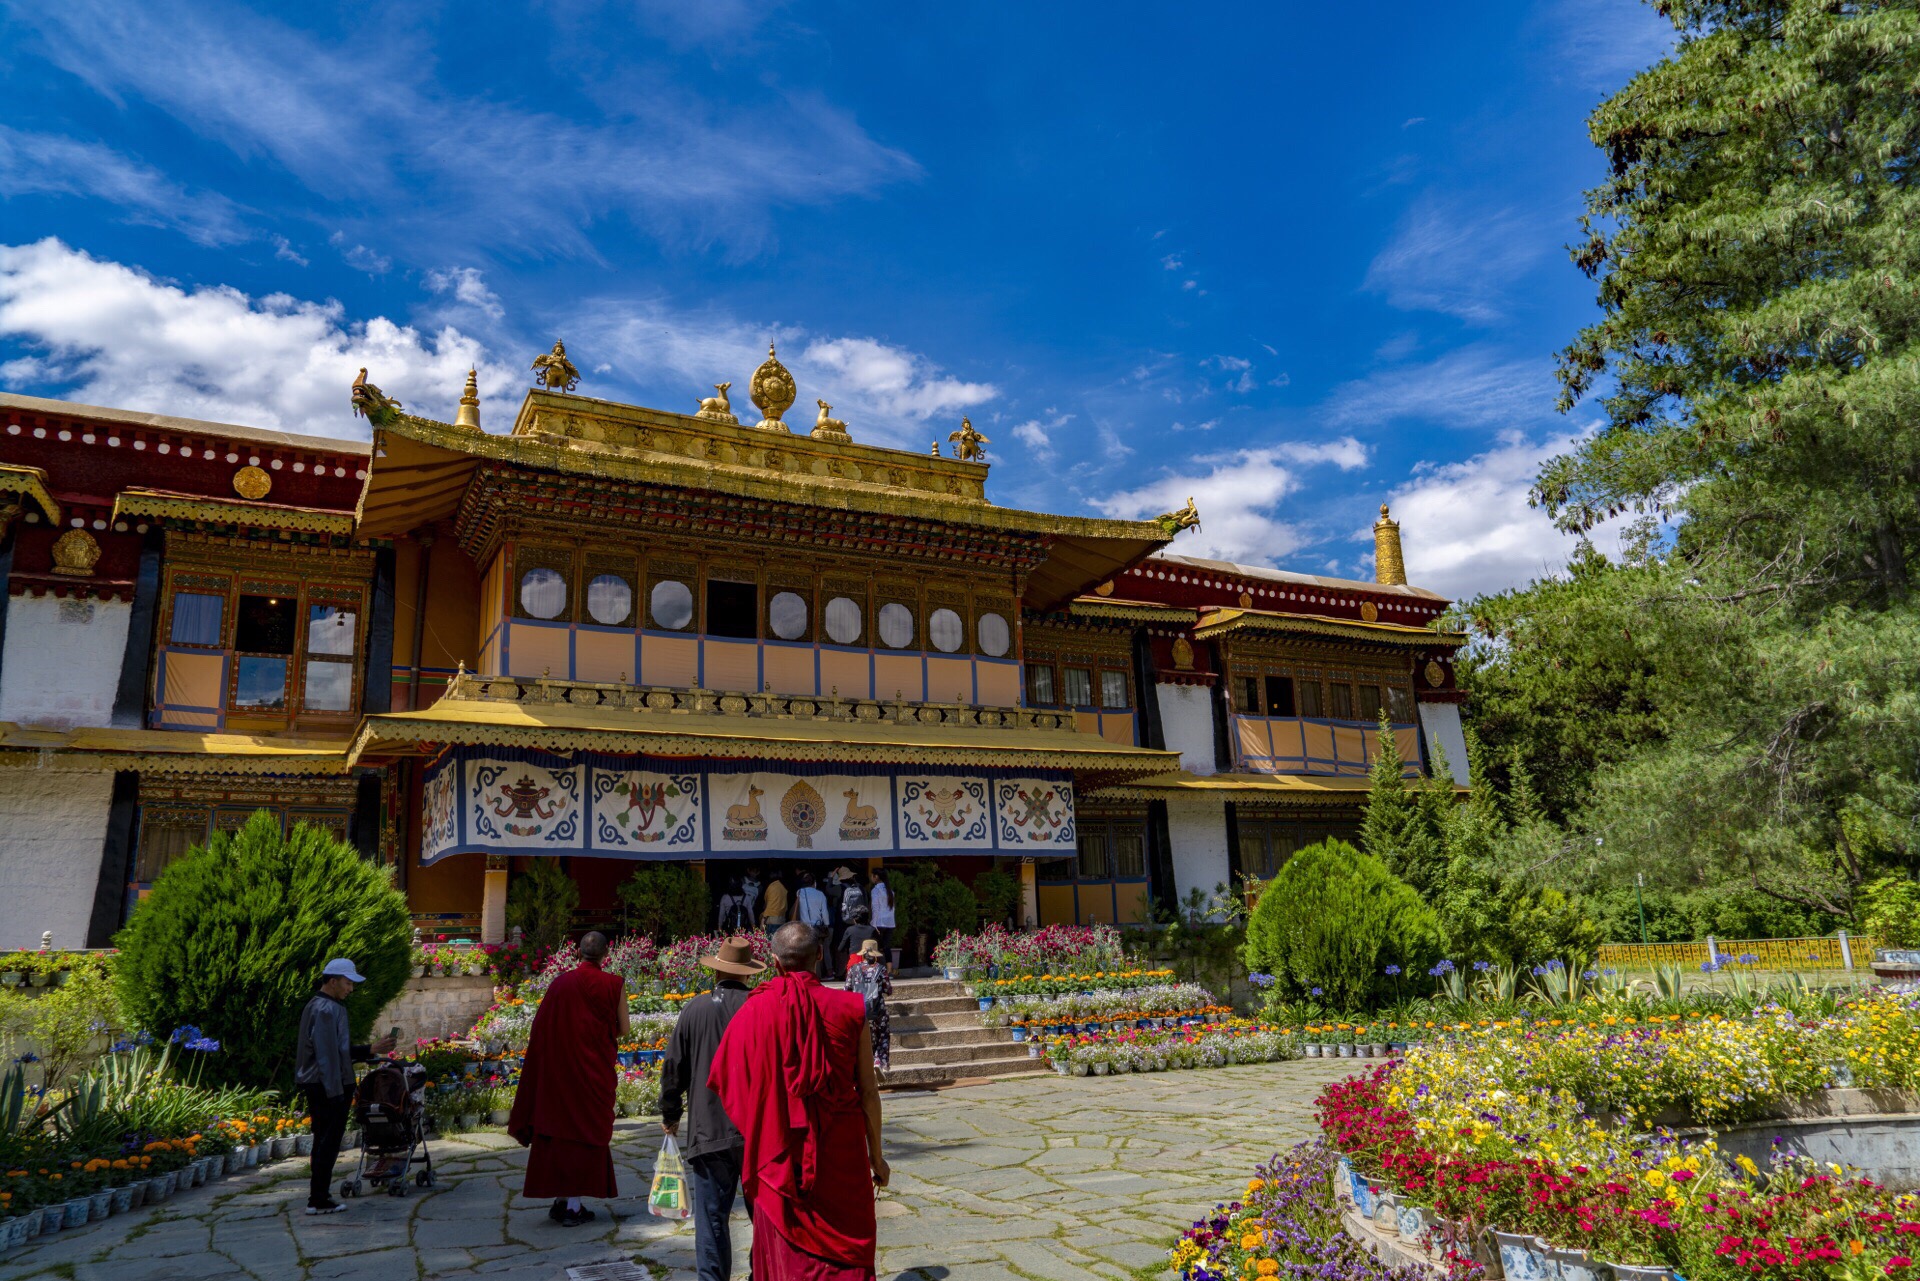 【携程攻略】拉萨罗布林卡景点,川藏线上的美景(十)罗布林卡西藏的